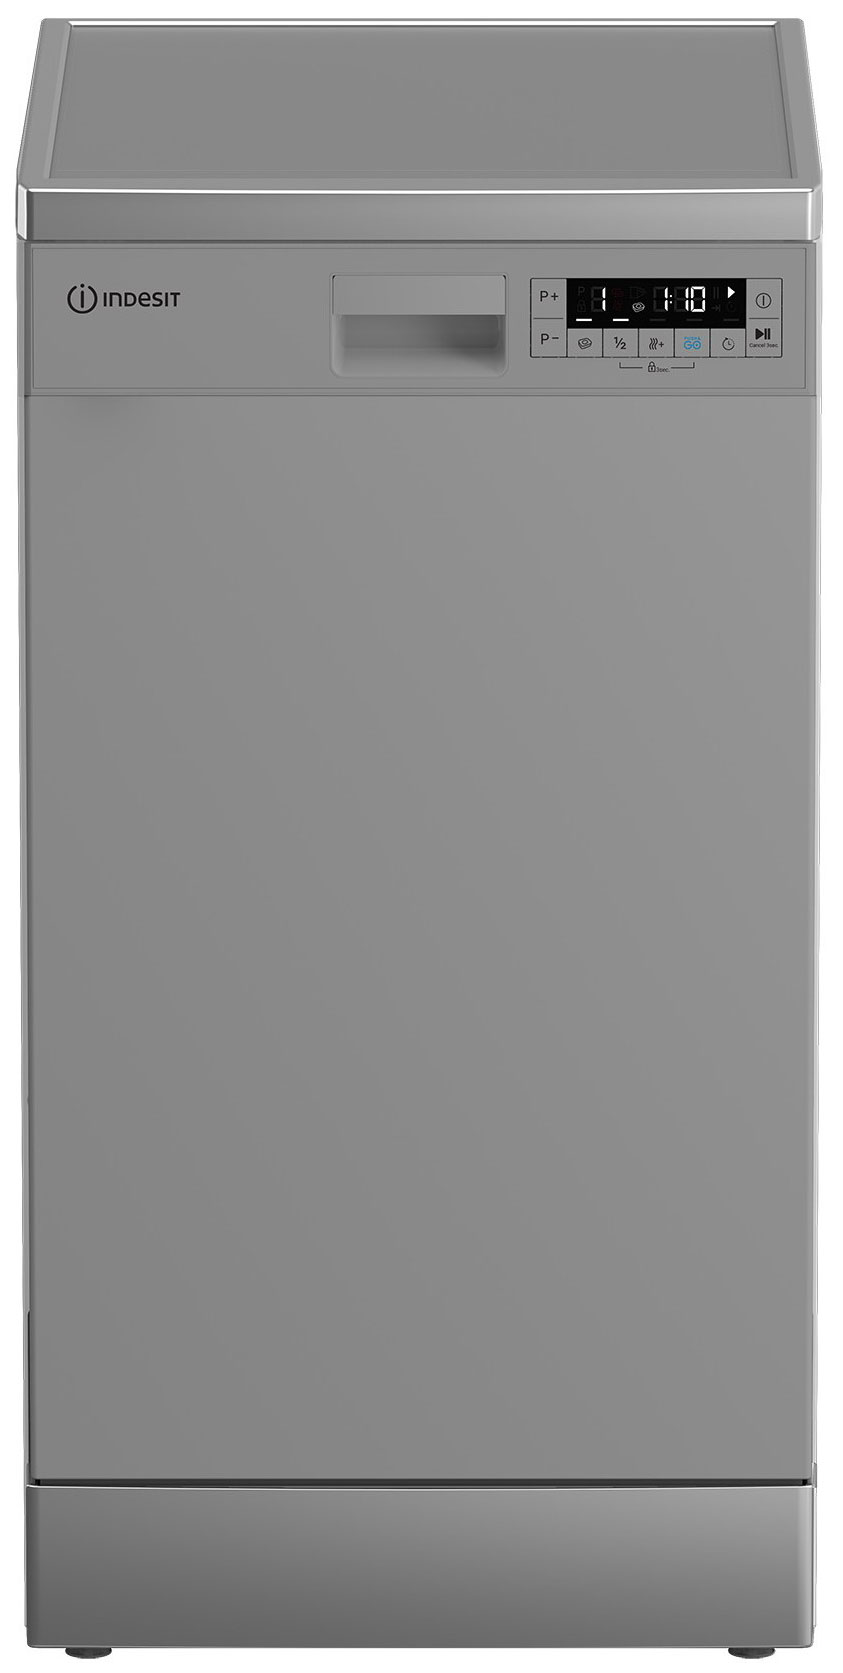 Посудомоечная машина Indesit DFS 1C67 S посудомоечная машина indesit dfs 1c67 узкая напольная 44 8см загрузка 10 комплектов белая [869894100030]